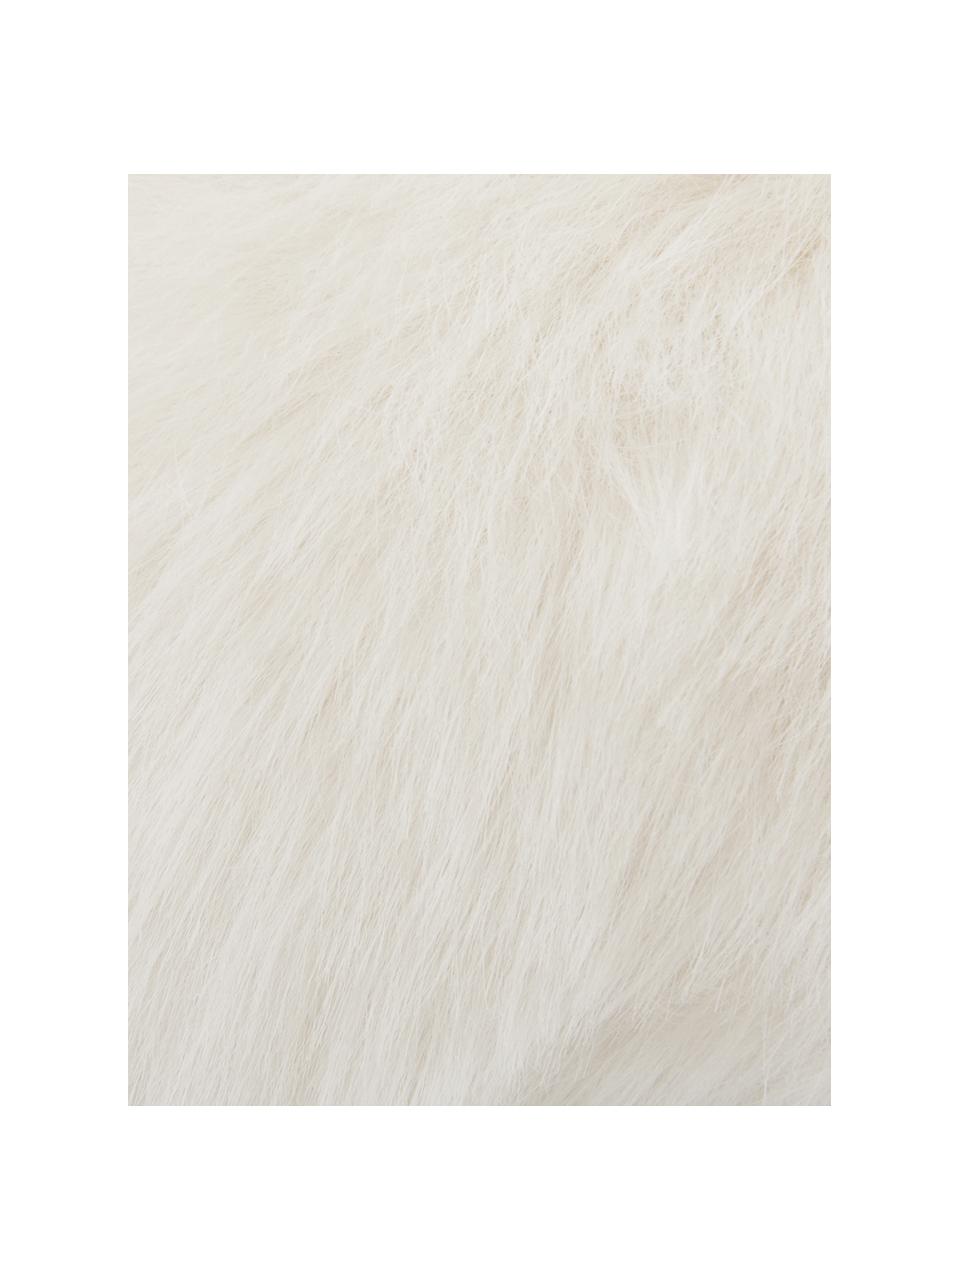 Galette de chaise ronde fausse fourrure lisse Mathilde, Blanc crème, Ø 37 cm